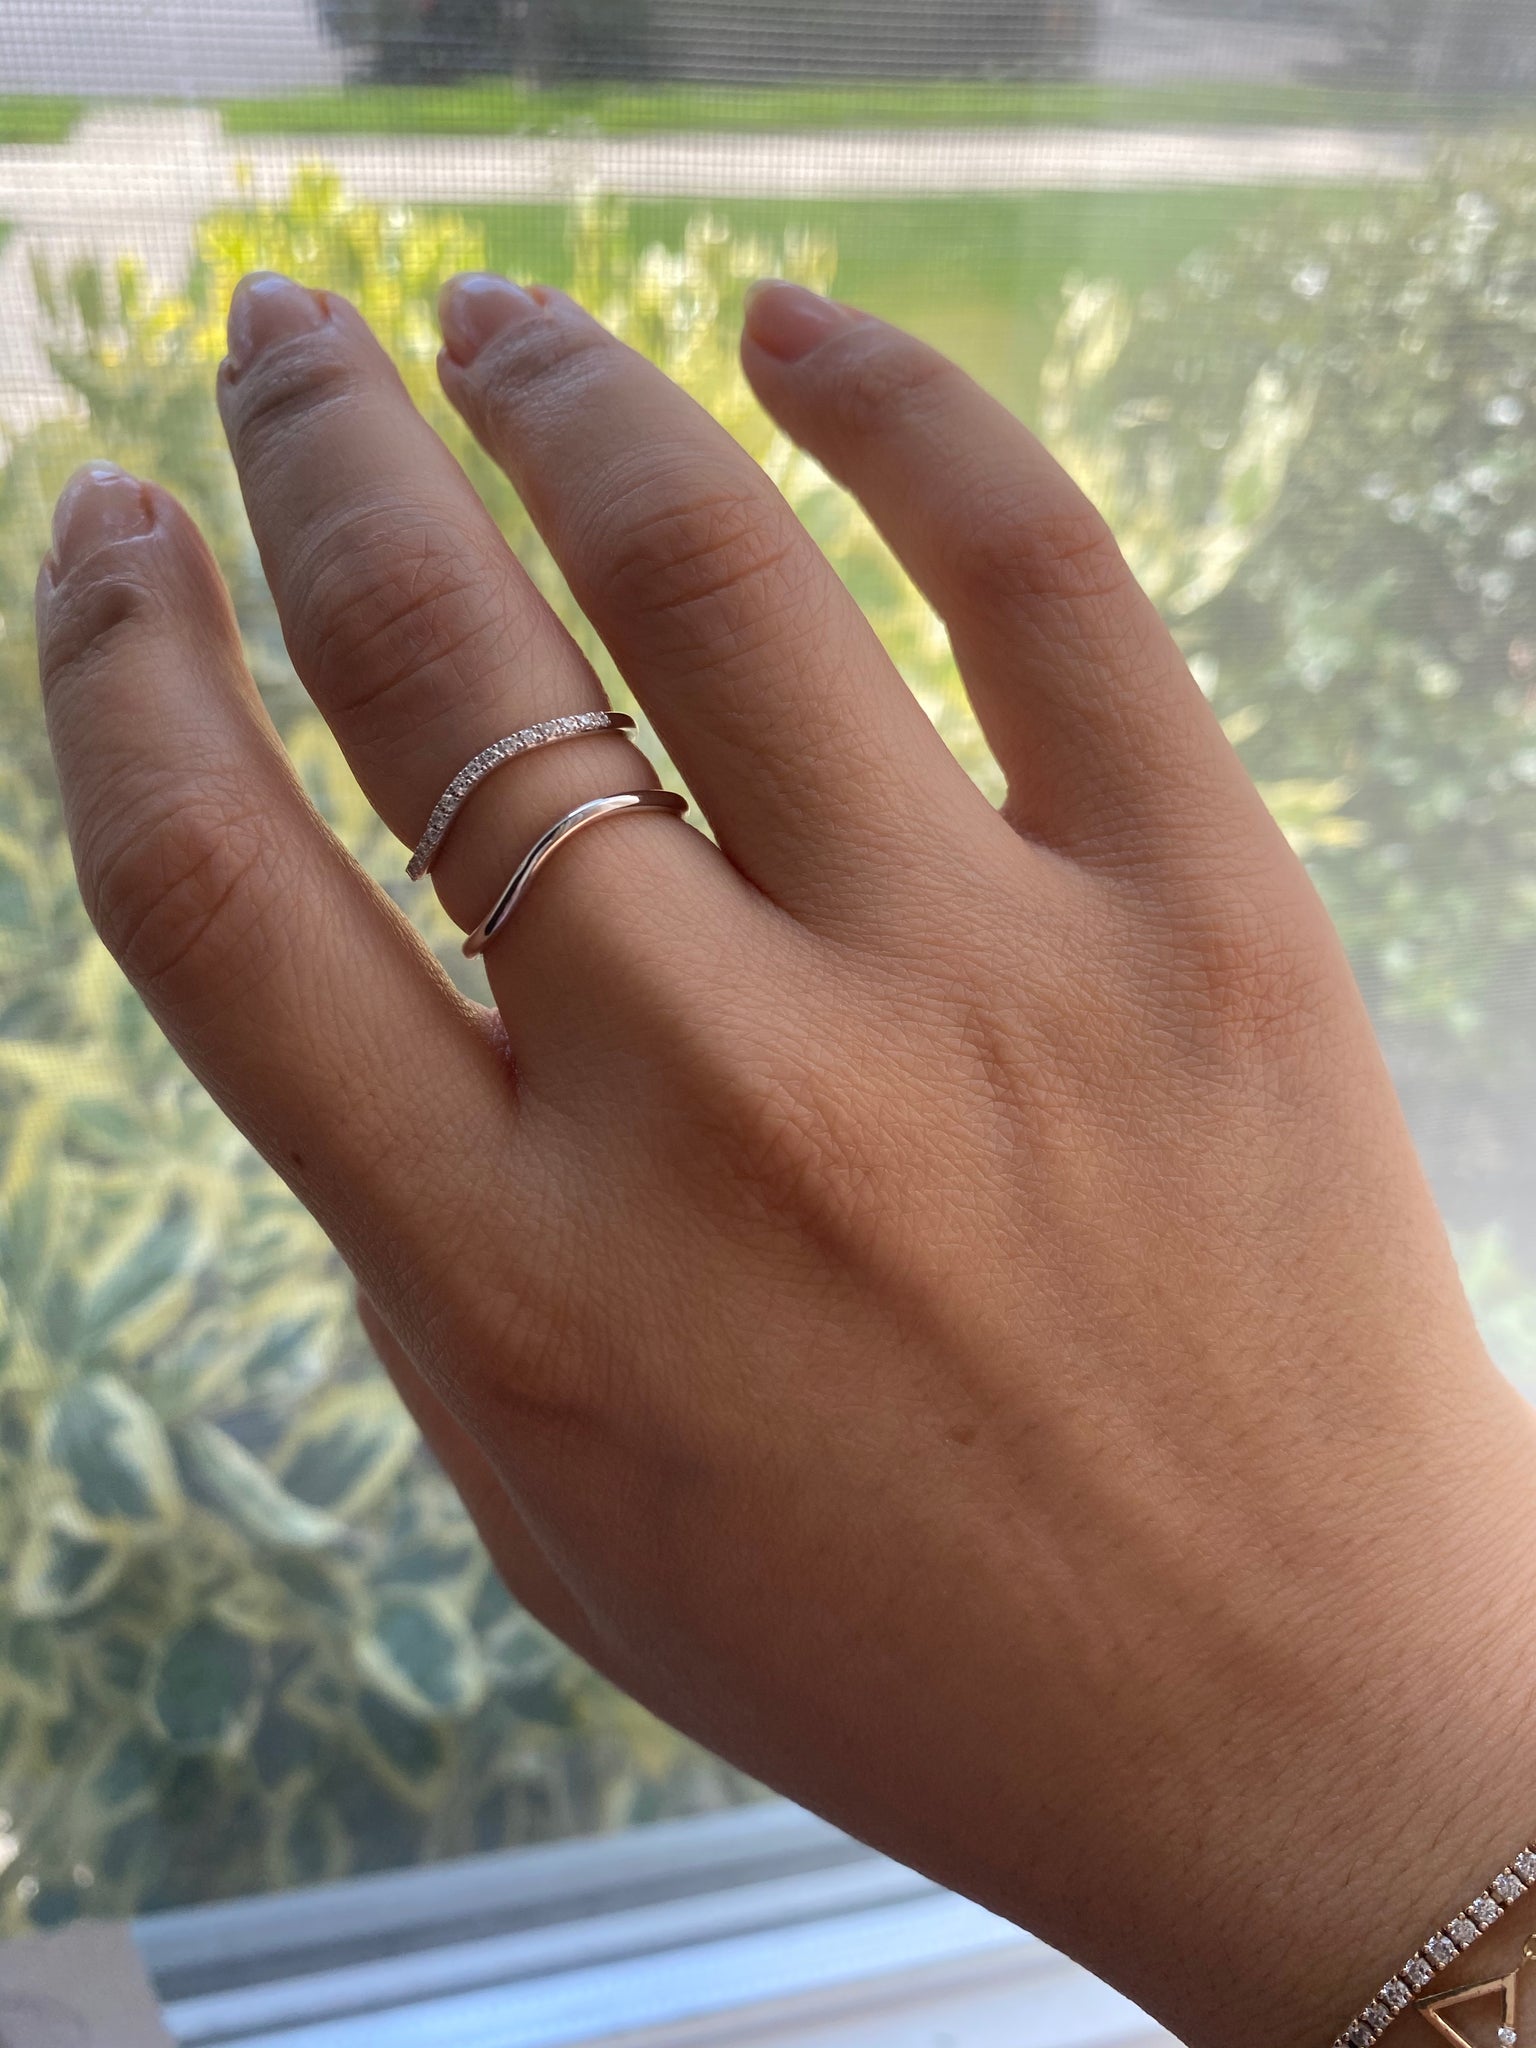 Buy BARMUNDA gems 5.50 Carat Zircon Ring American Diamond Ring Adjustable  Ring for Men and Women at Amazon.in